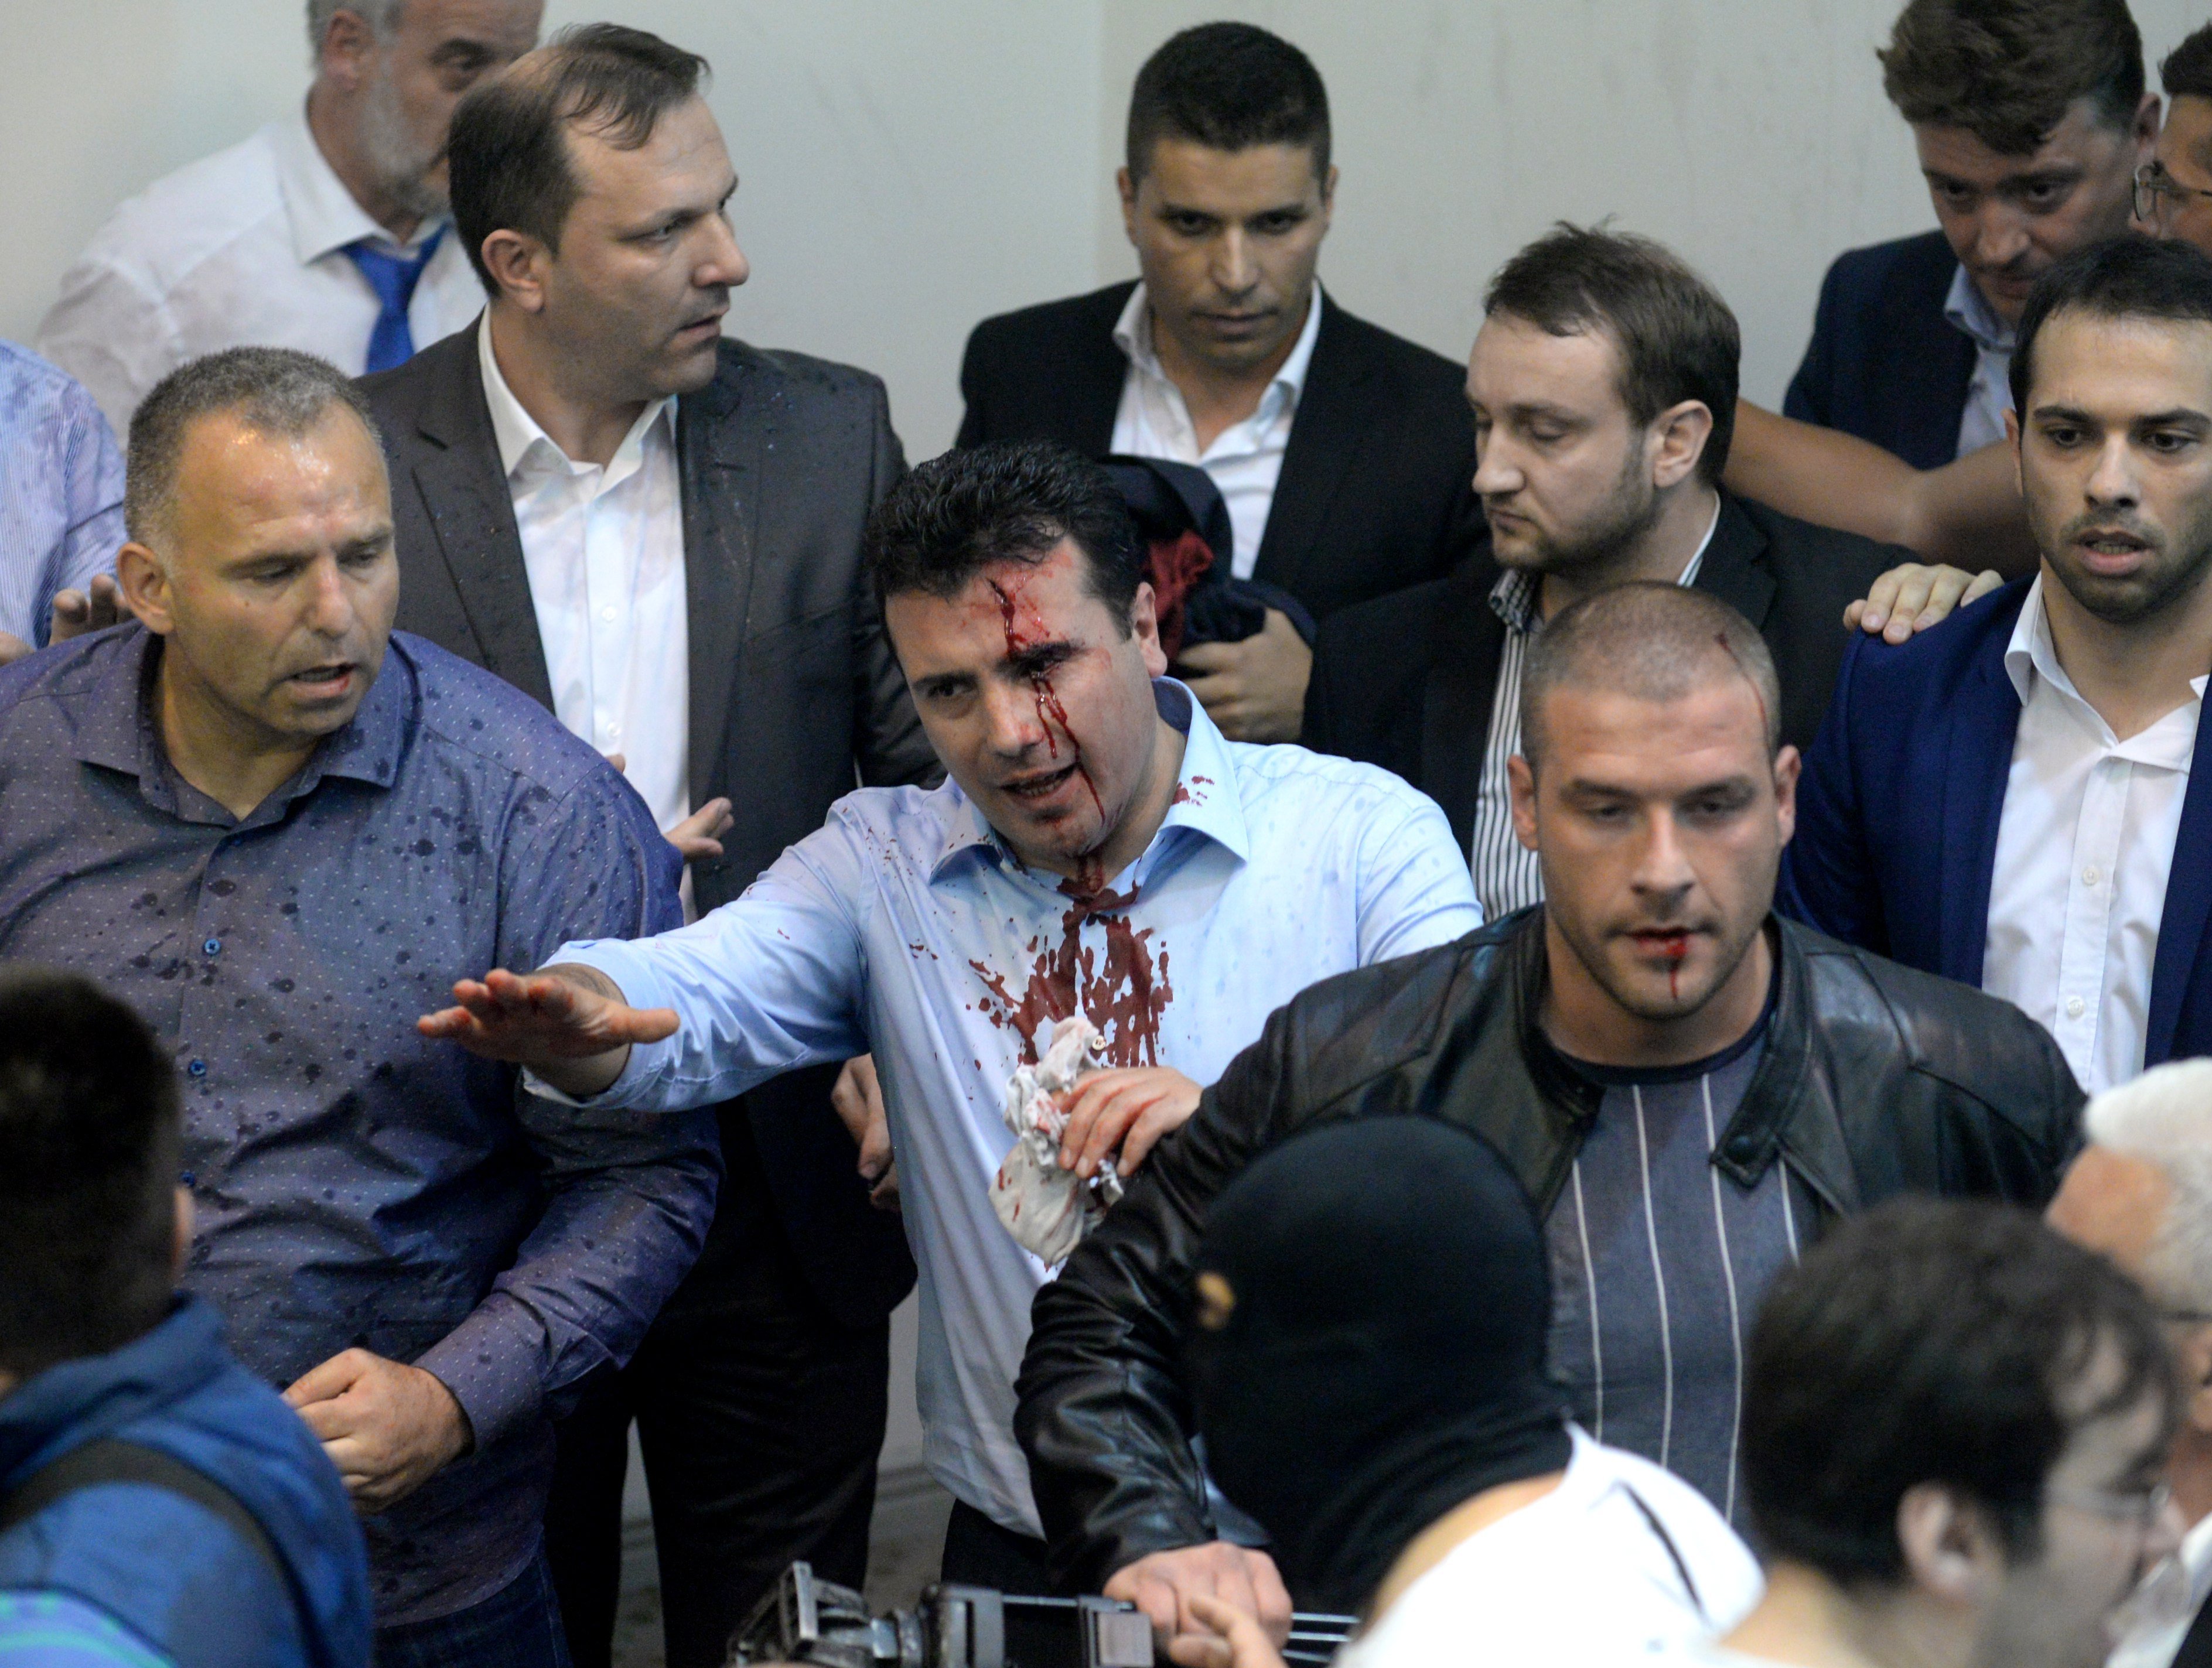 Agressions al parlament de Macedònia per l'elecció d'un albanès com a president de la Cambra